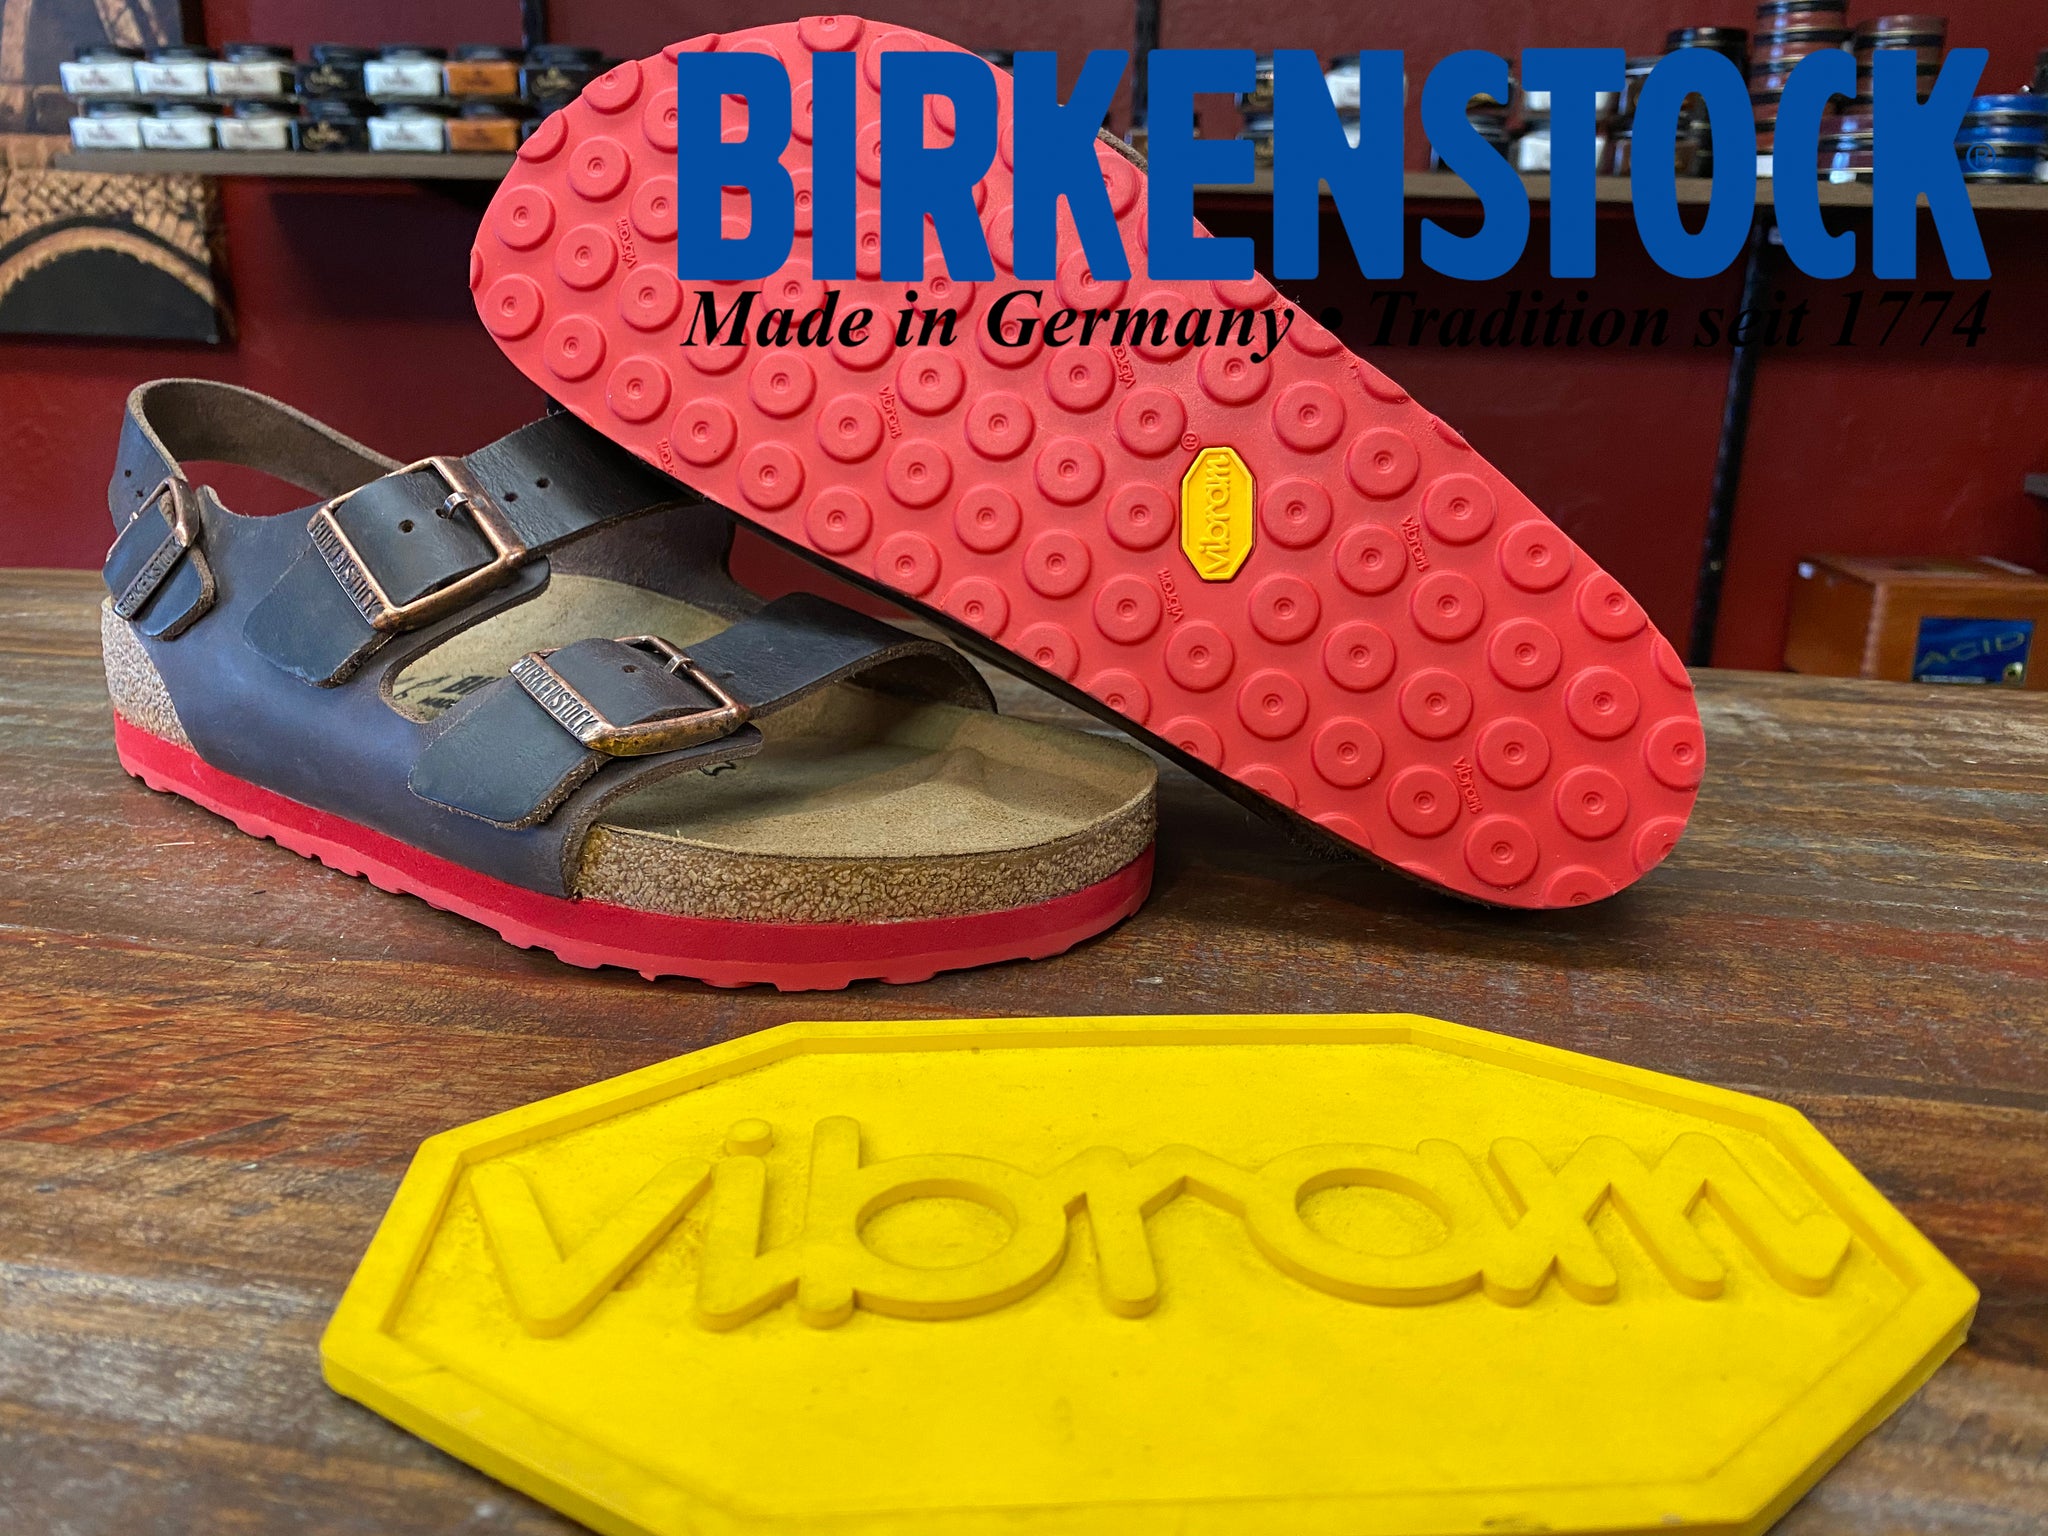 birkenstock red sole